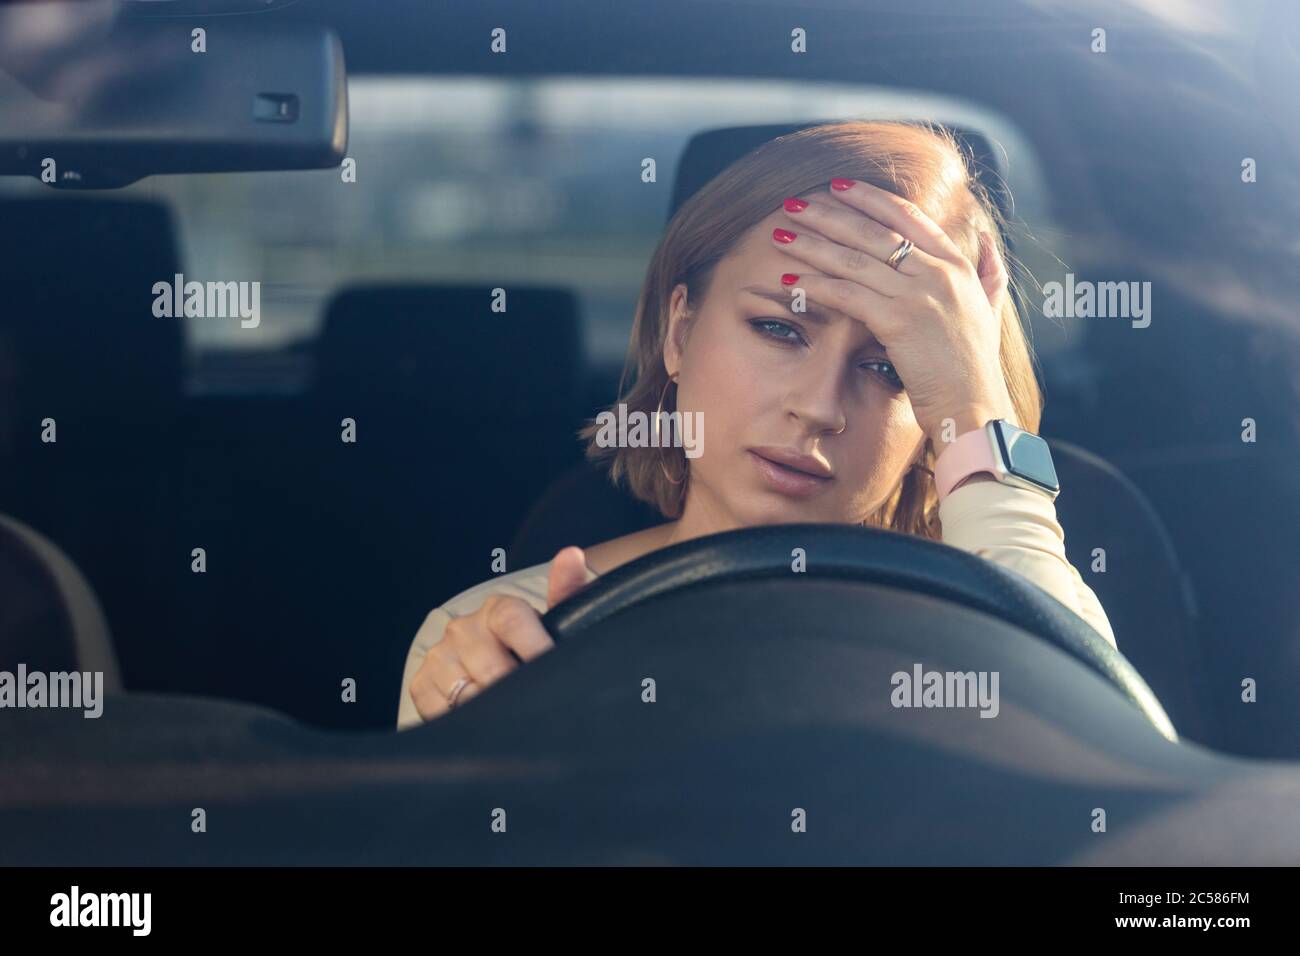 Exhausta joven mujer conductor sentado en su coche, sintiendo agotamiento emocional después del trabajo, mirando la cámara, tocando su frente. Salud mental, fatigu Foto de stock